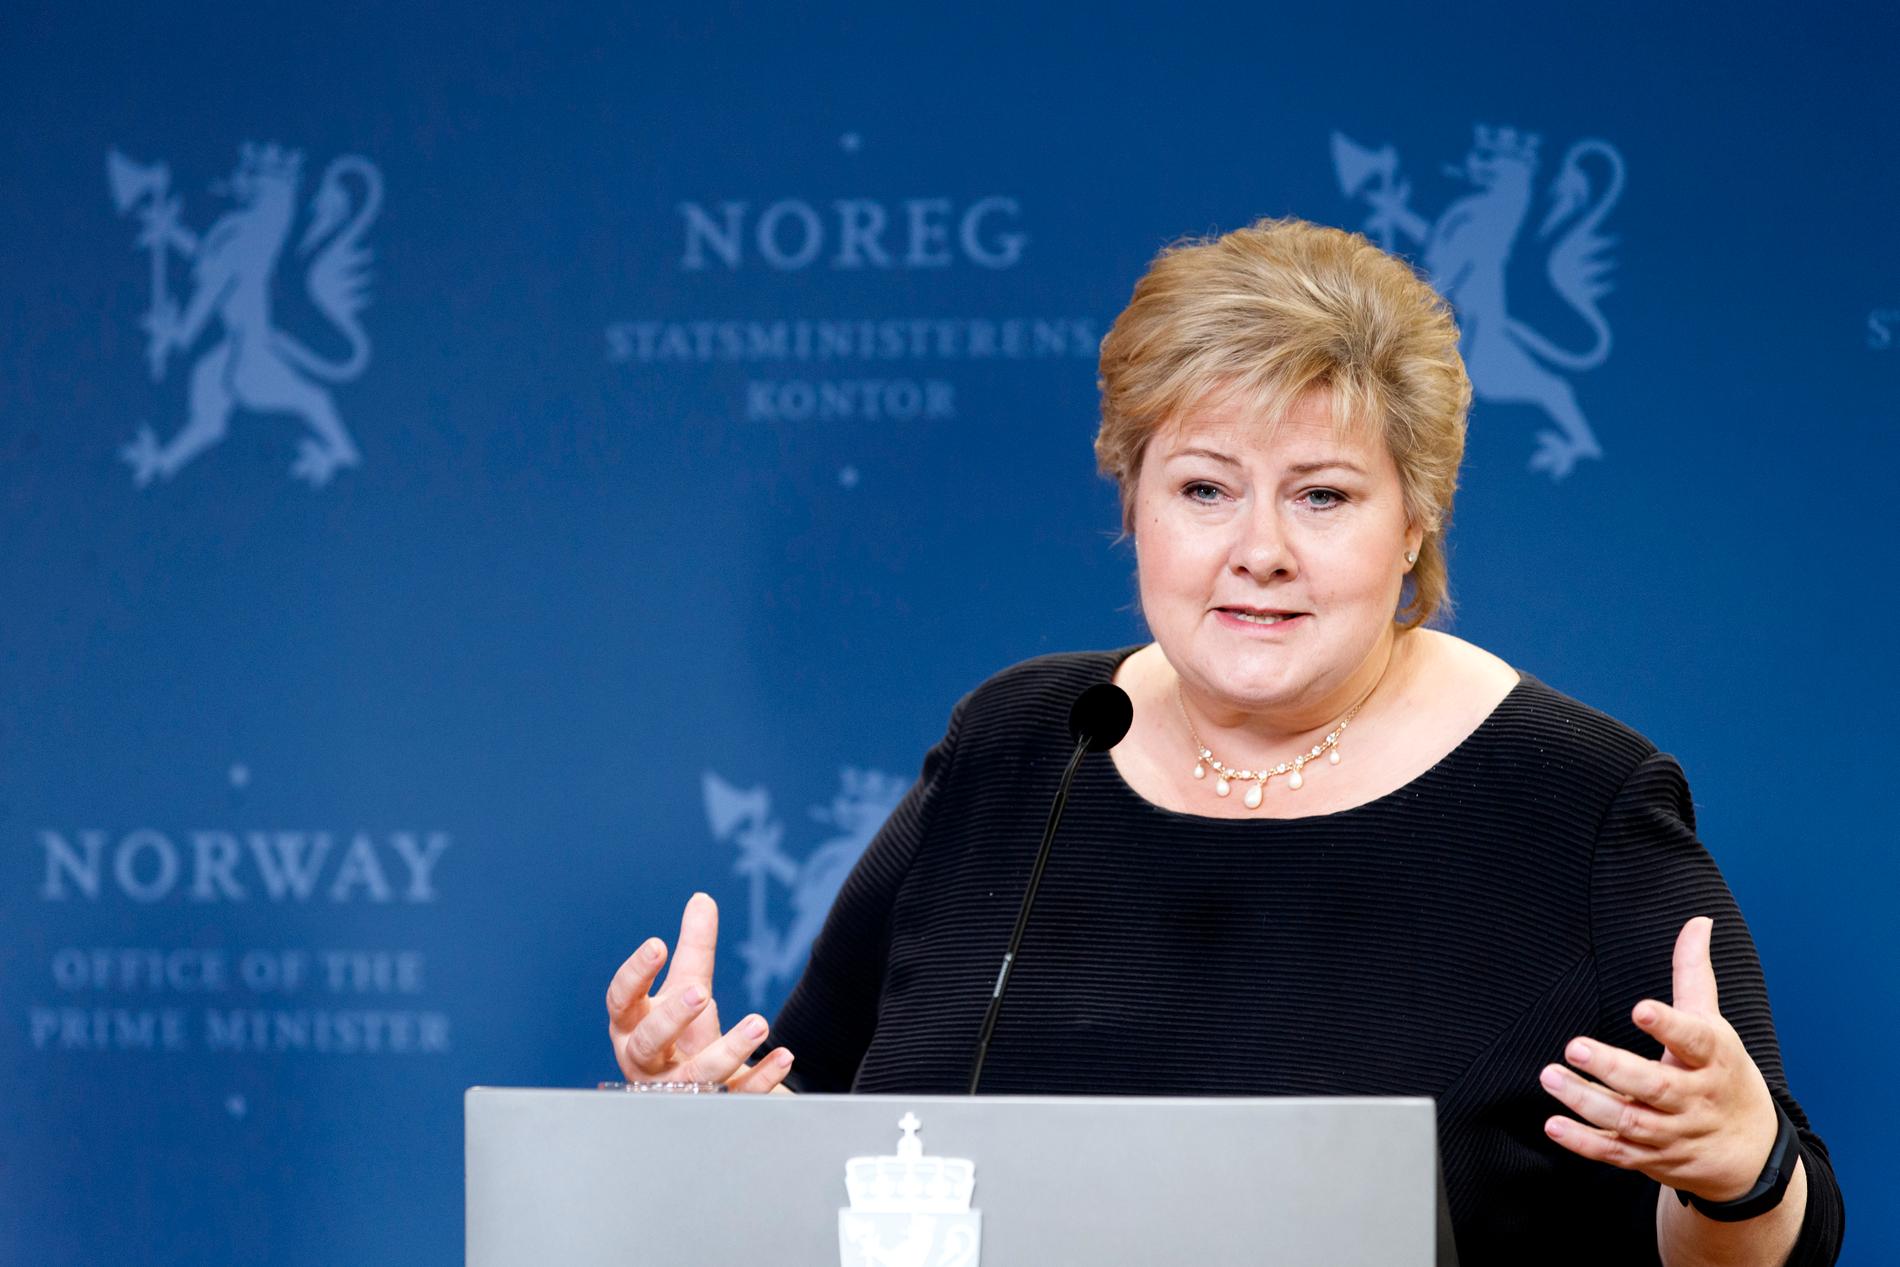 FRYKTER NORSK NEDTUR: Statsminister Erna Solberg (H) varsler at Storbritannias nei til EU også kan få konsekvenser for norsk økonomi, ikke minst hvis veksten i Europa blir svekket som følge av økt usikkerhet.